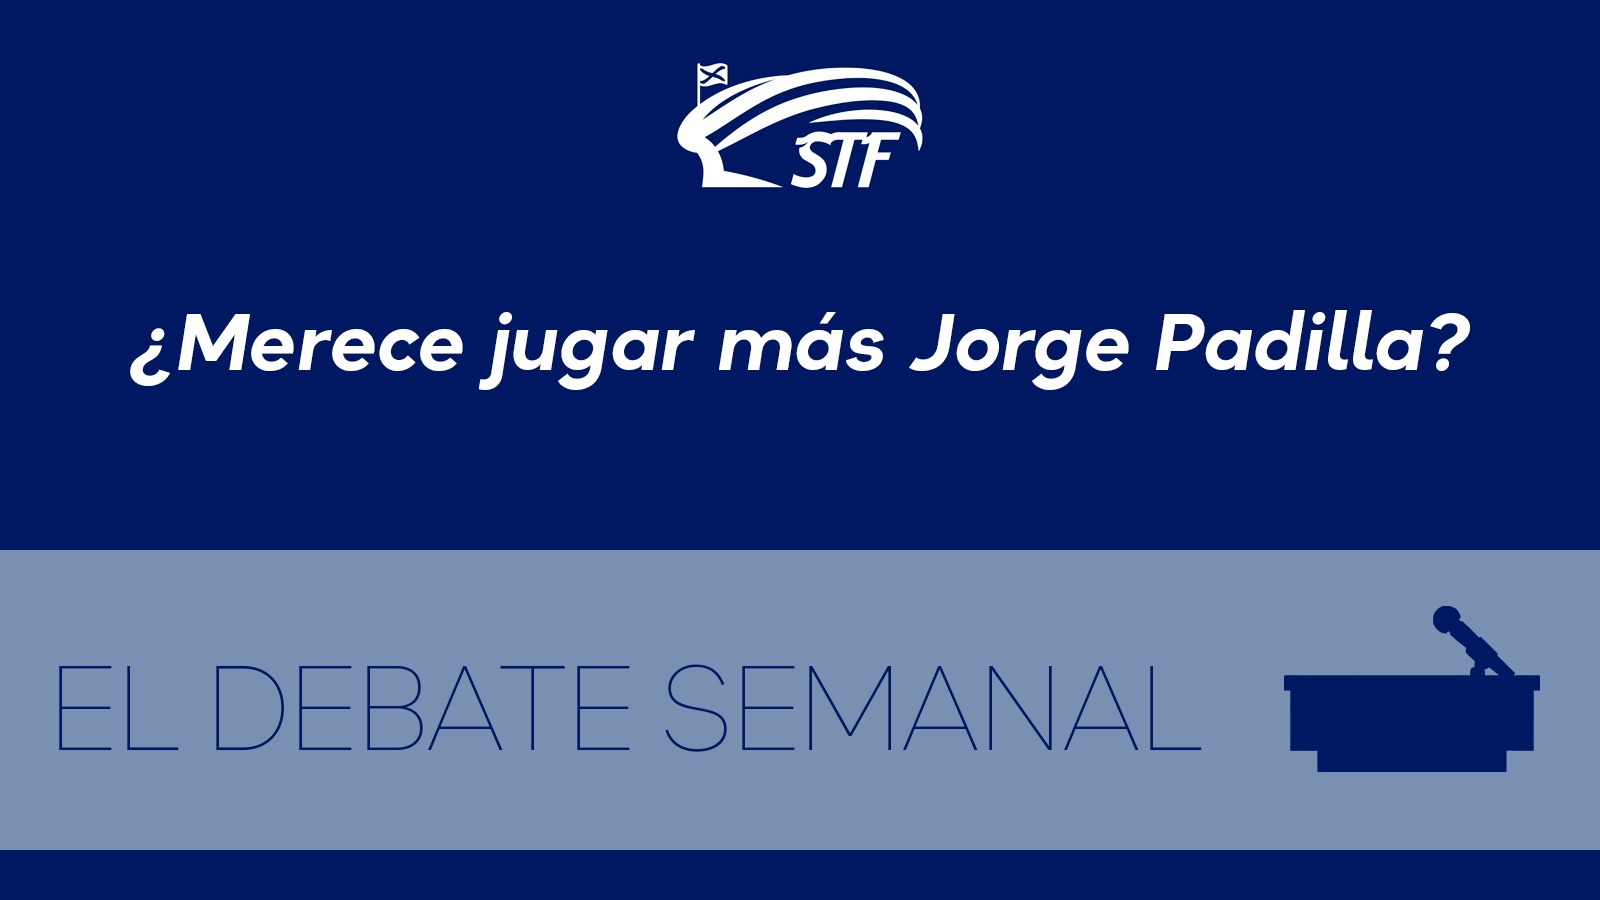 El Debate Semanal: ¿Merece jugar más Jorge Padilla? El 90,6 por ciento dice sí